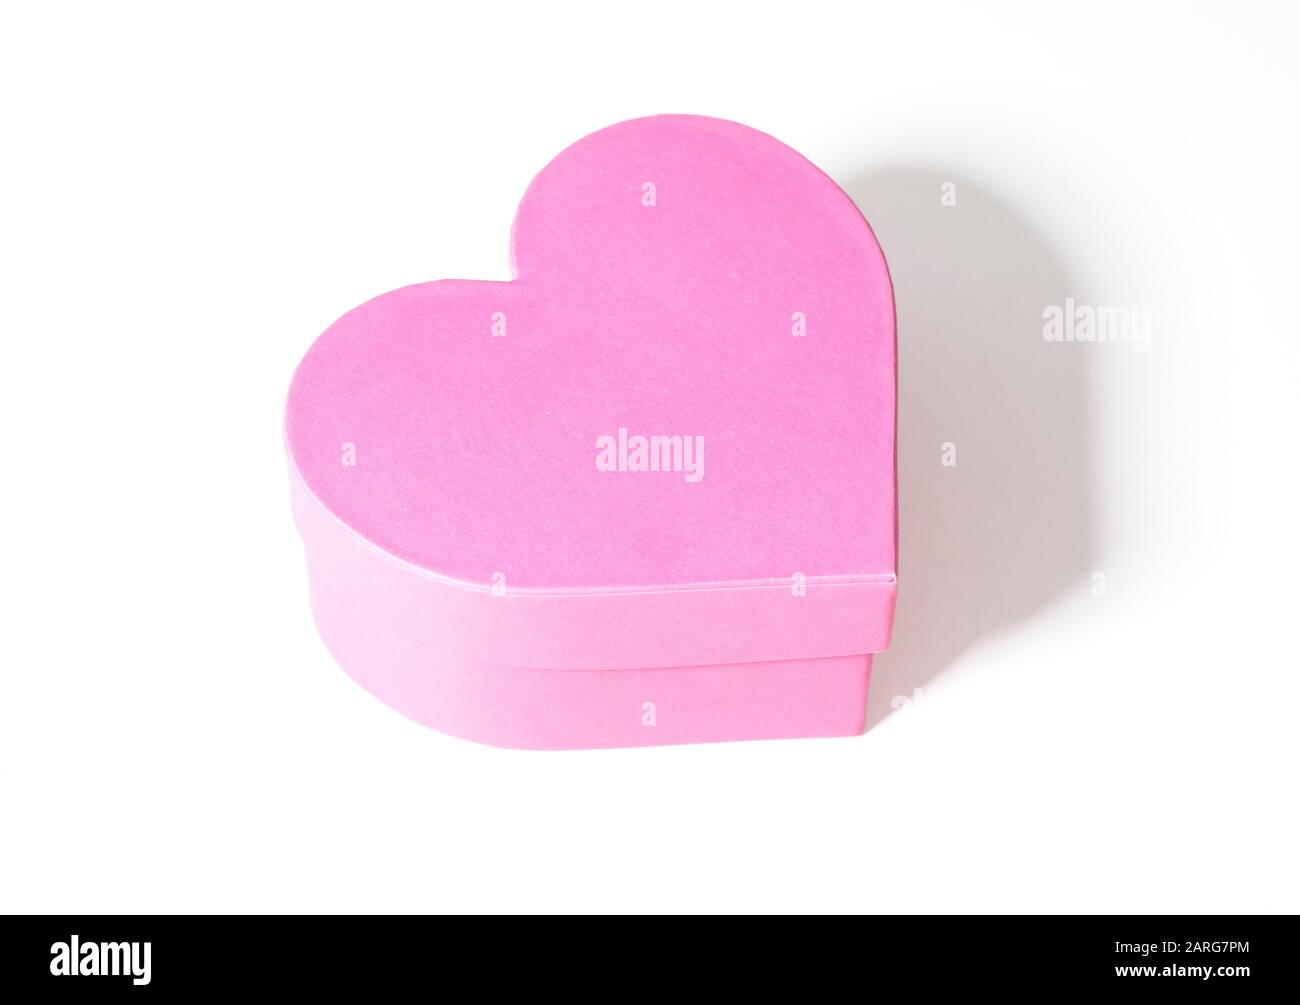 Caja de regalo en forma de corazón aislado sobre fondo blanco Foto de stock